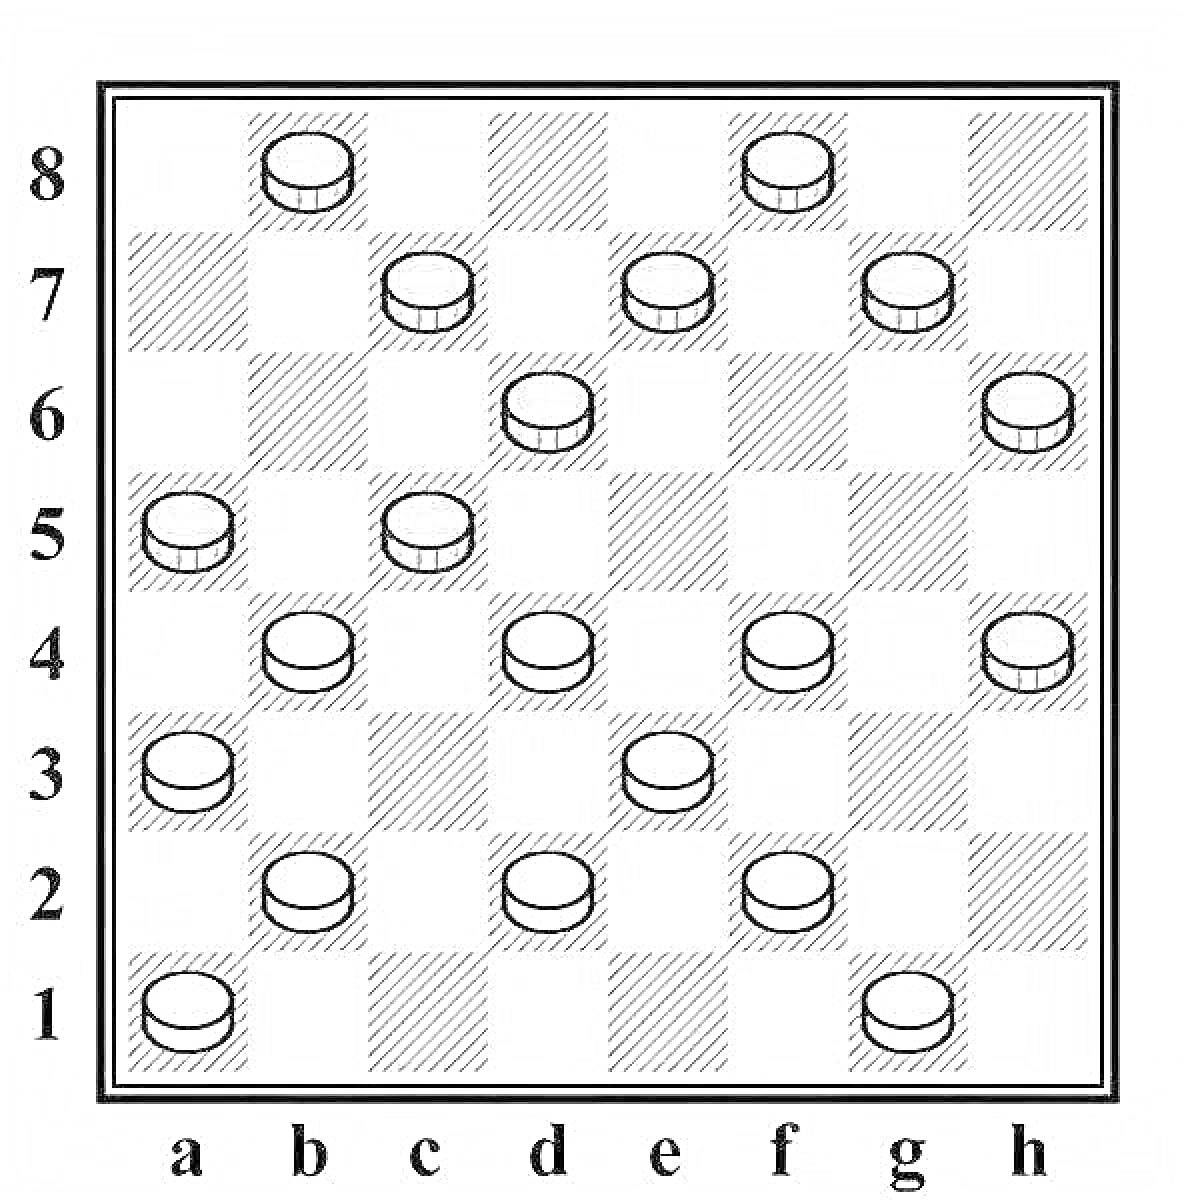 Доска для шашек с черными и белыми шашками на клетках от A1 до H8